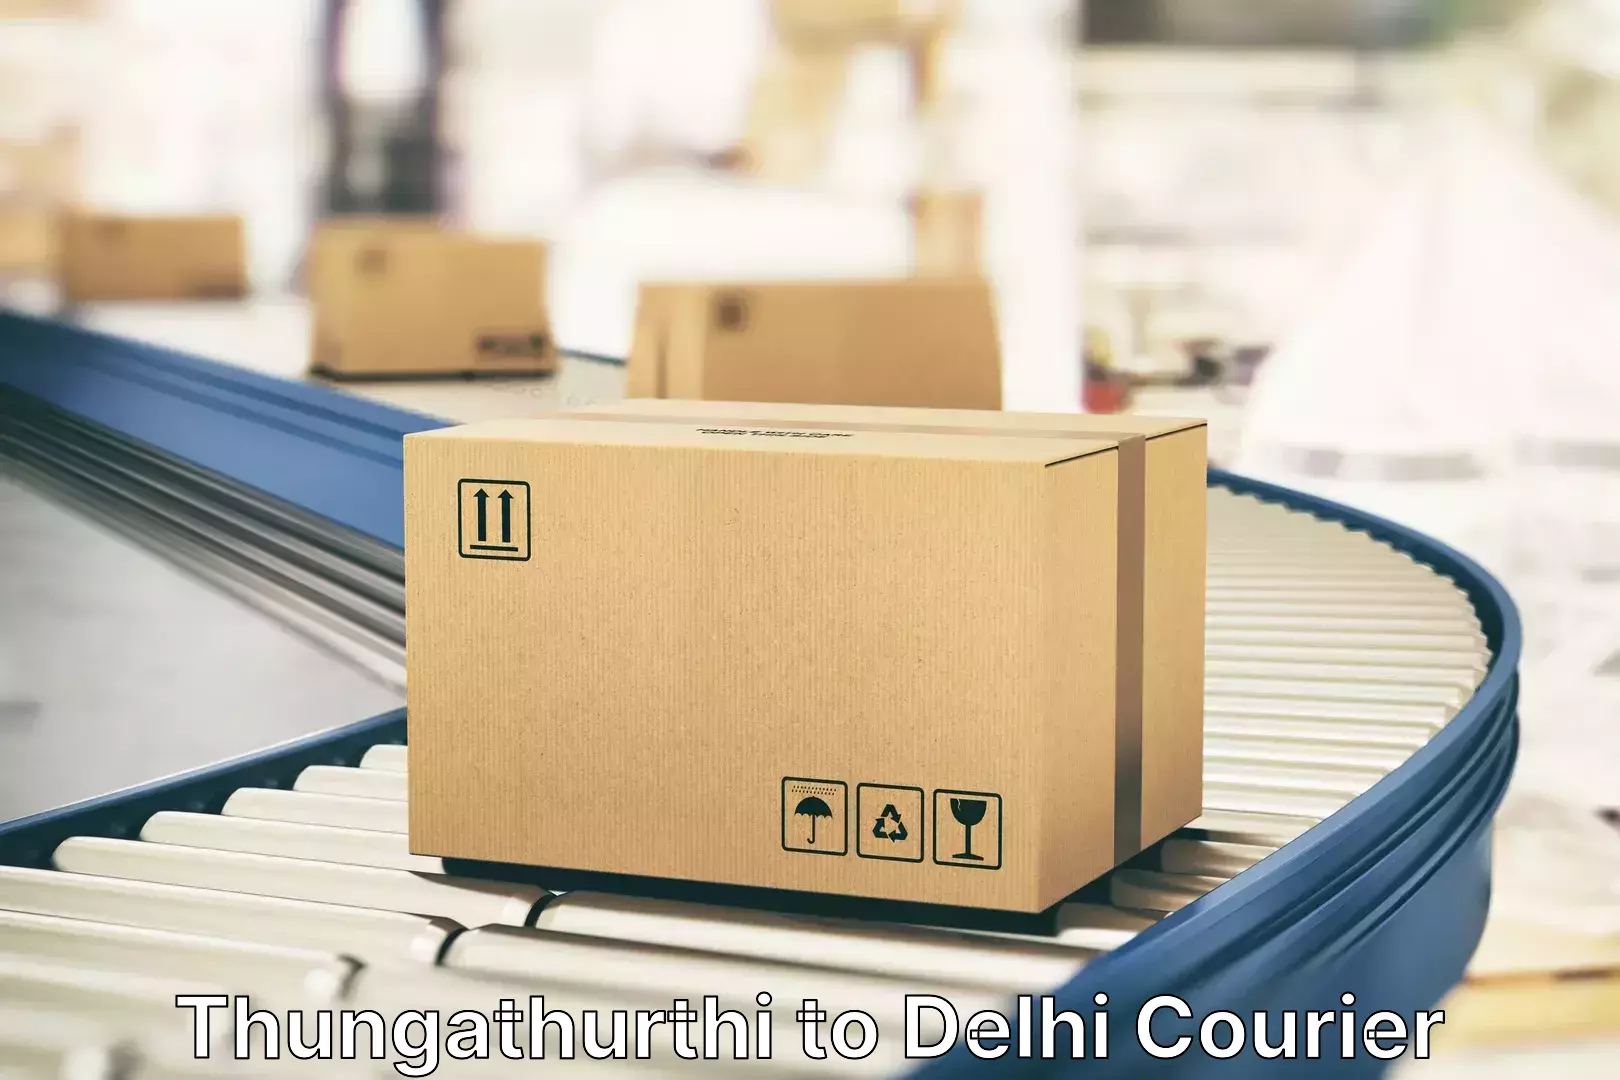 Outsize baggage transport Thungathurthi to East Delhi